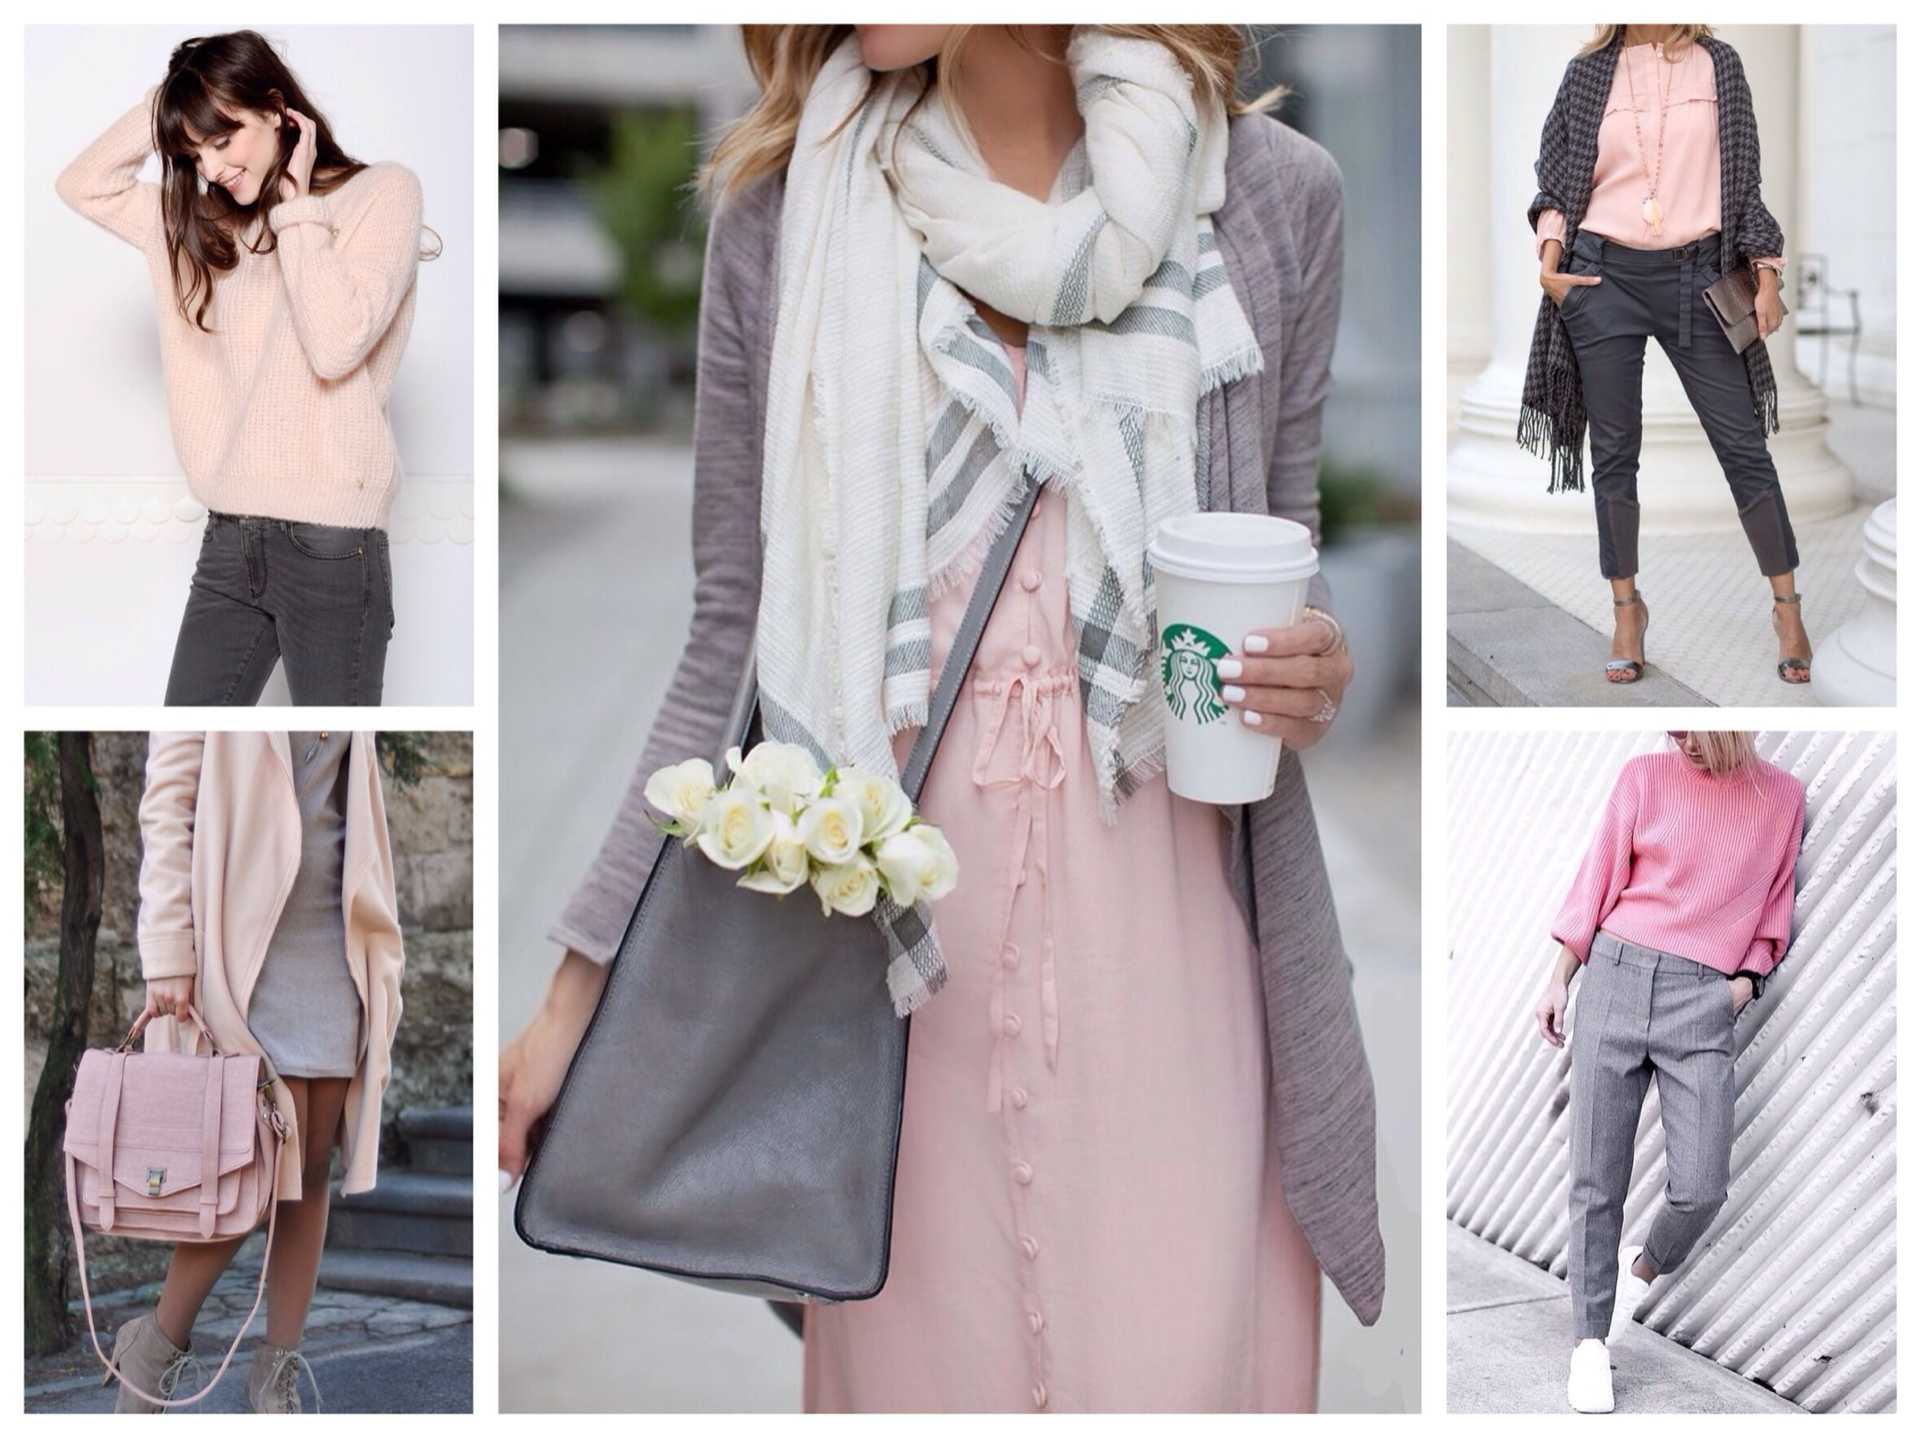 Бледно розовый цвет в женской одежде - сочетание с другими цветами